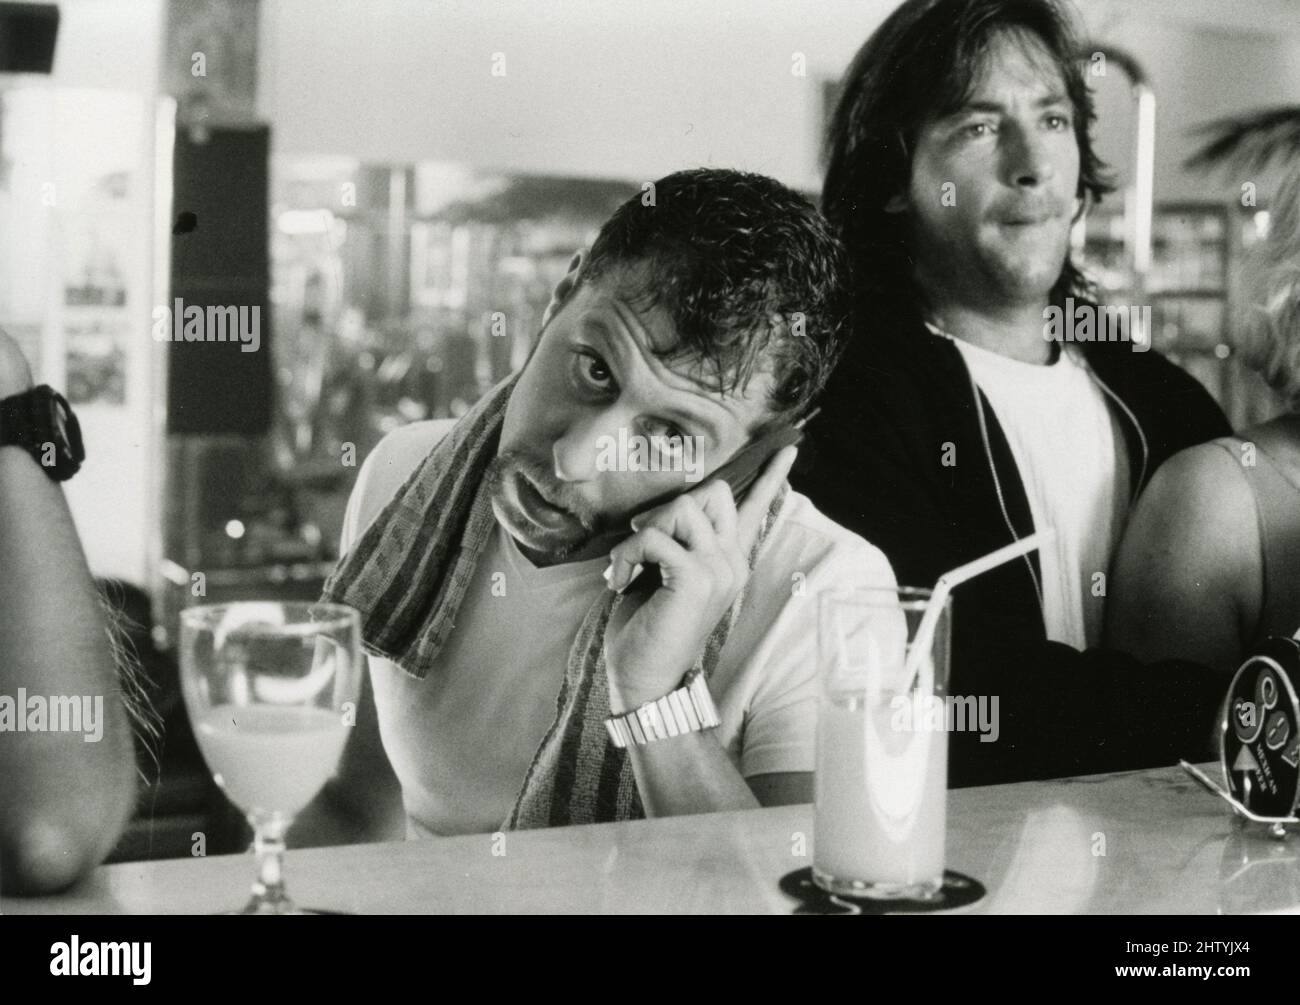 El actor alemán Oliver Korritke en la película The Model Boys, Alemania 1997 Foto de stock